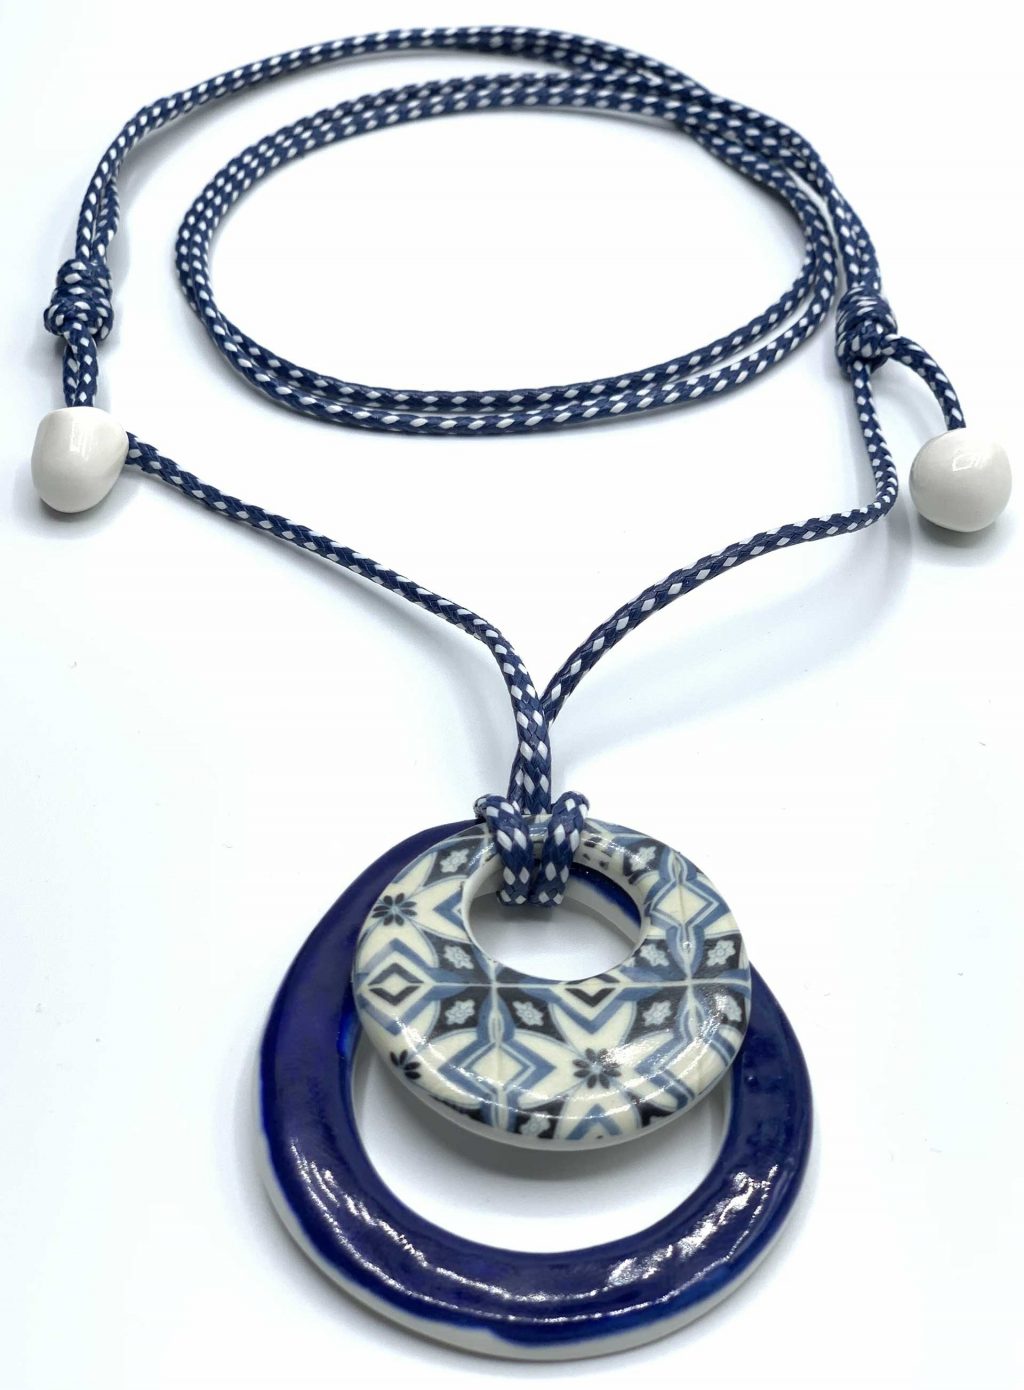 detalle del colgante cristina con cordel azul de cerámica hecho a mano en la fundación Eu Son